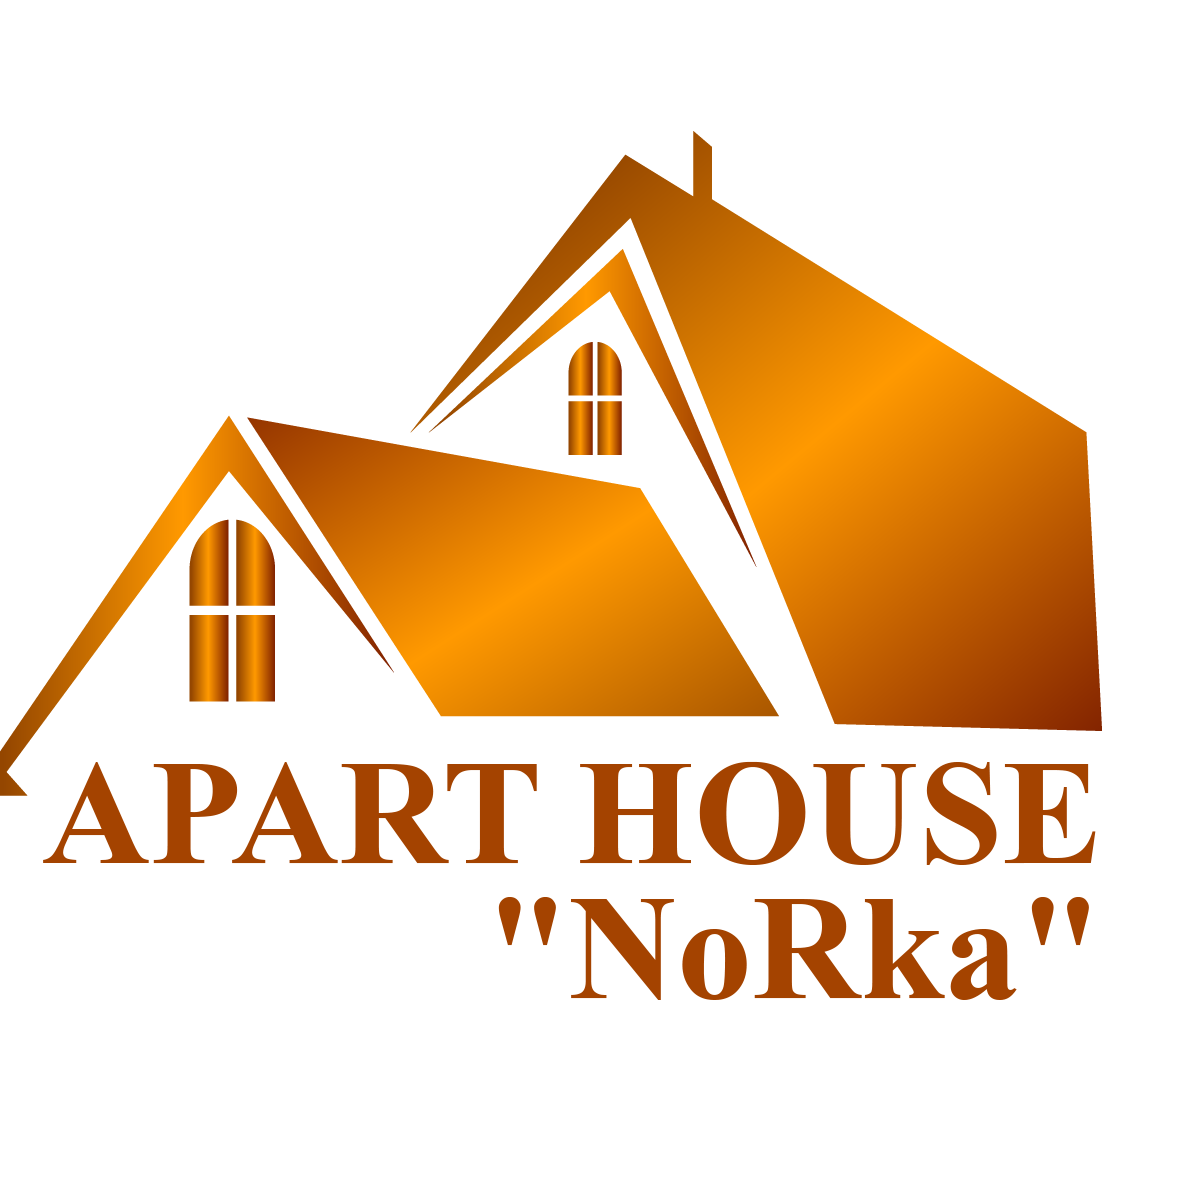 Апартаменты "NoRka" - аренда жилья в Сочи Адлер, снять квартиру Сочи Адлер, снять дом Сочи Адлер